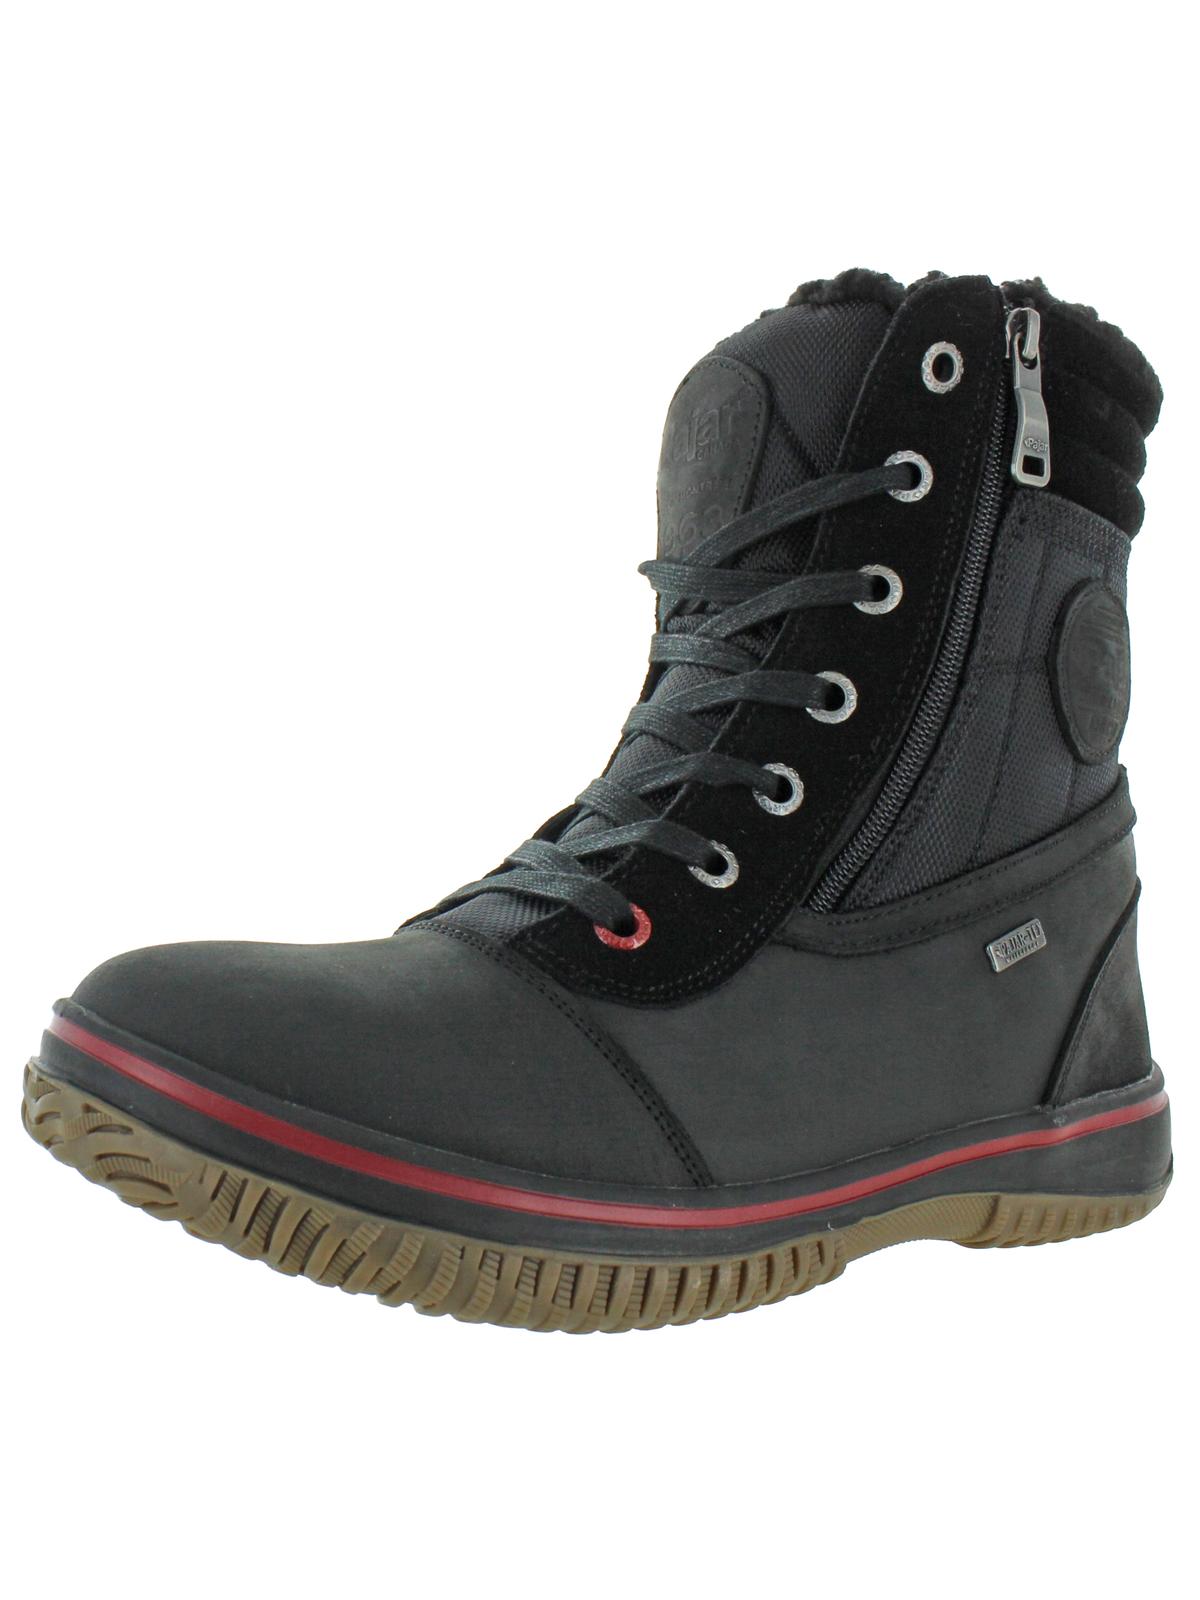 Pajar Trooper 2.0 Mens Leather Waterproof Winter Boots In Black